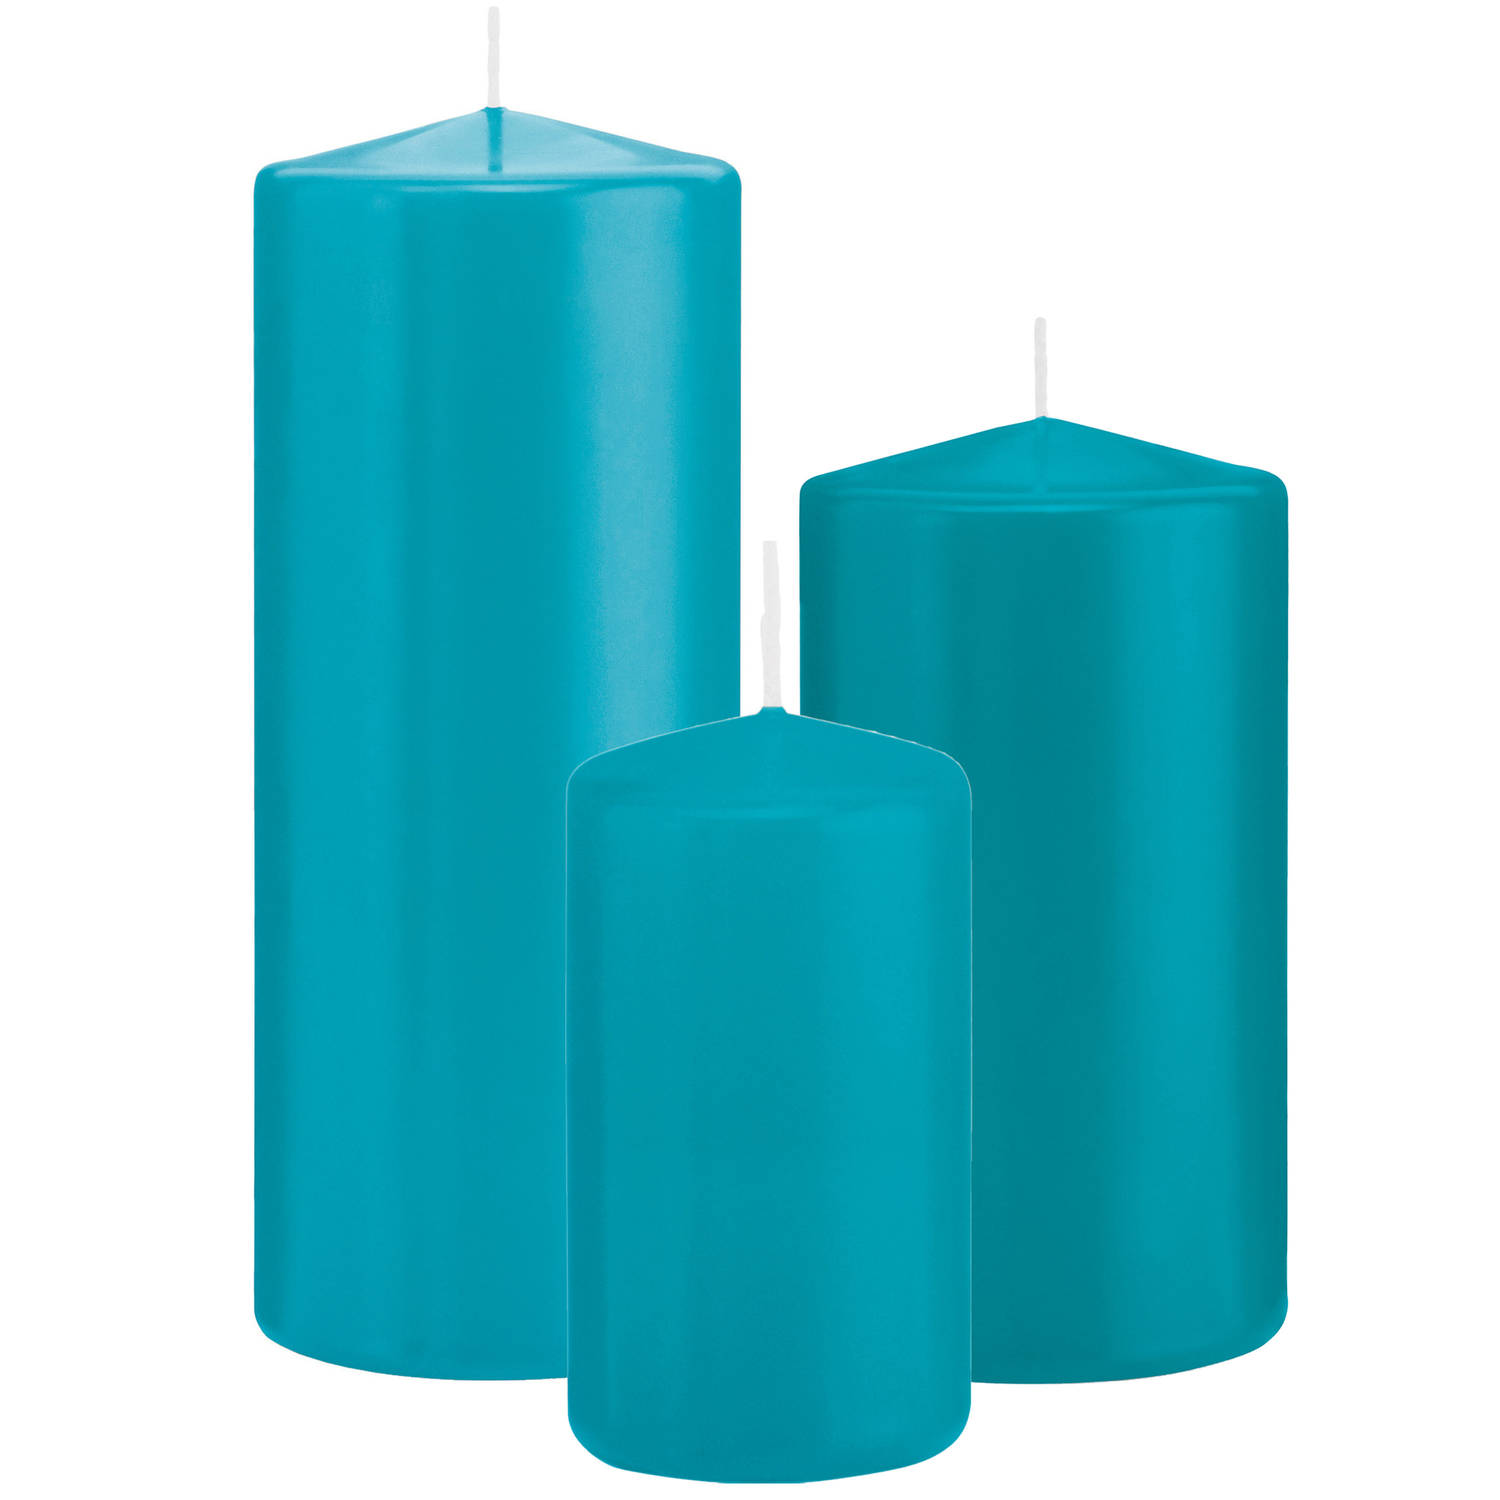 Trend Candles - Stompkaarsen set 3x stuks turquoise blauw 12-15-20 cm